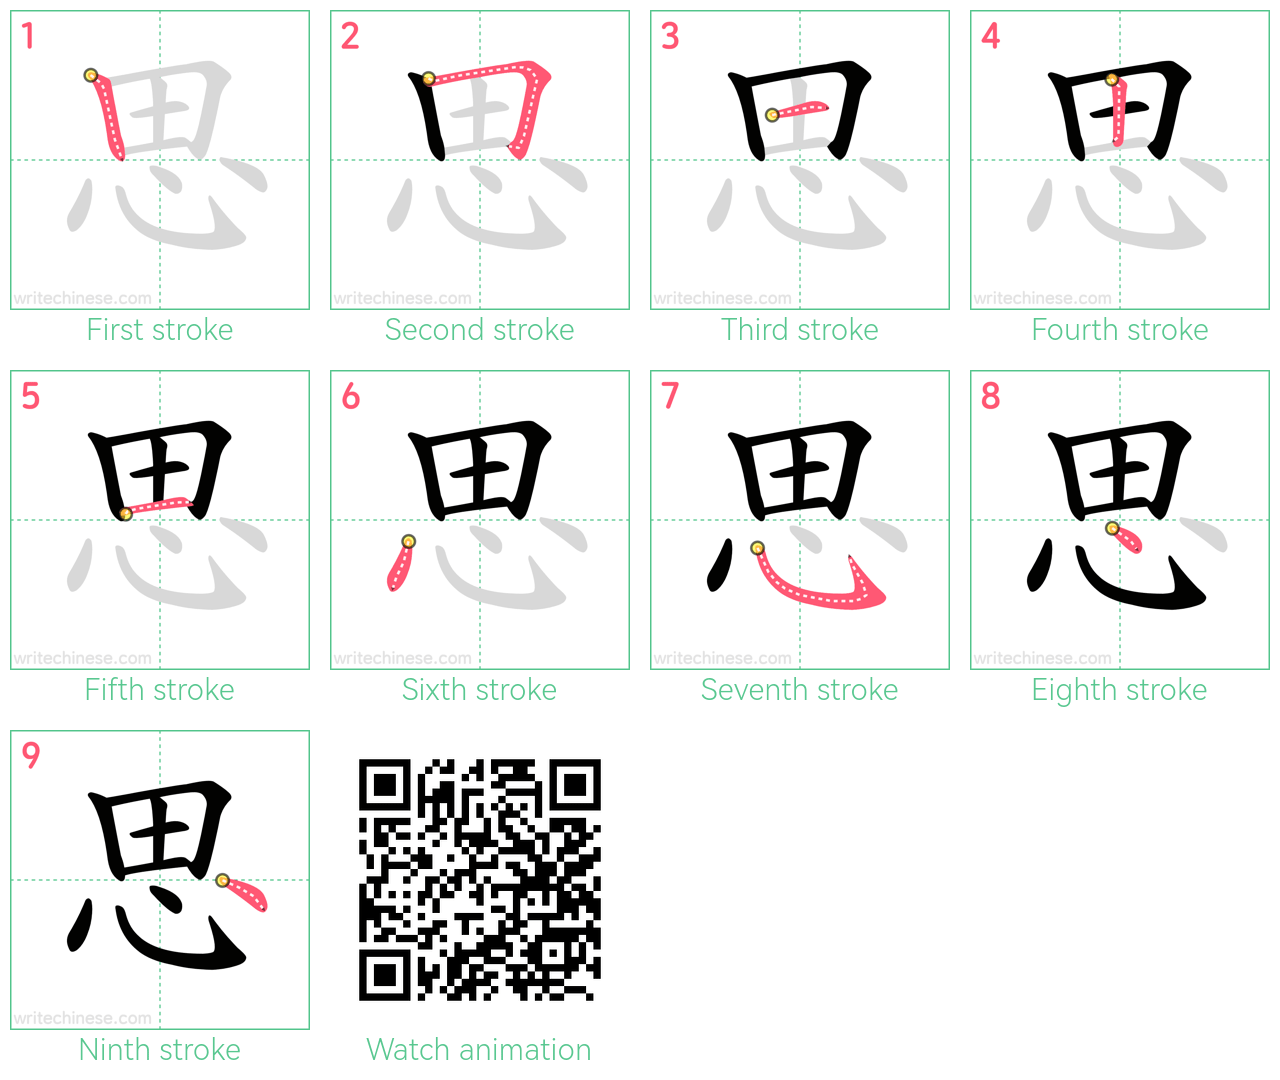 思 step-by-step stroke order diagrams